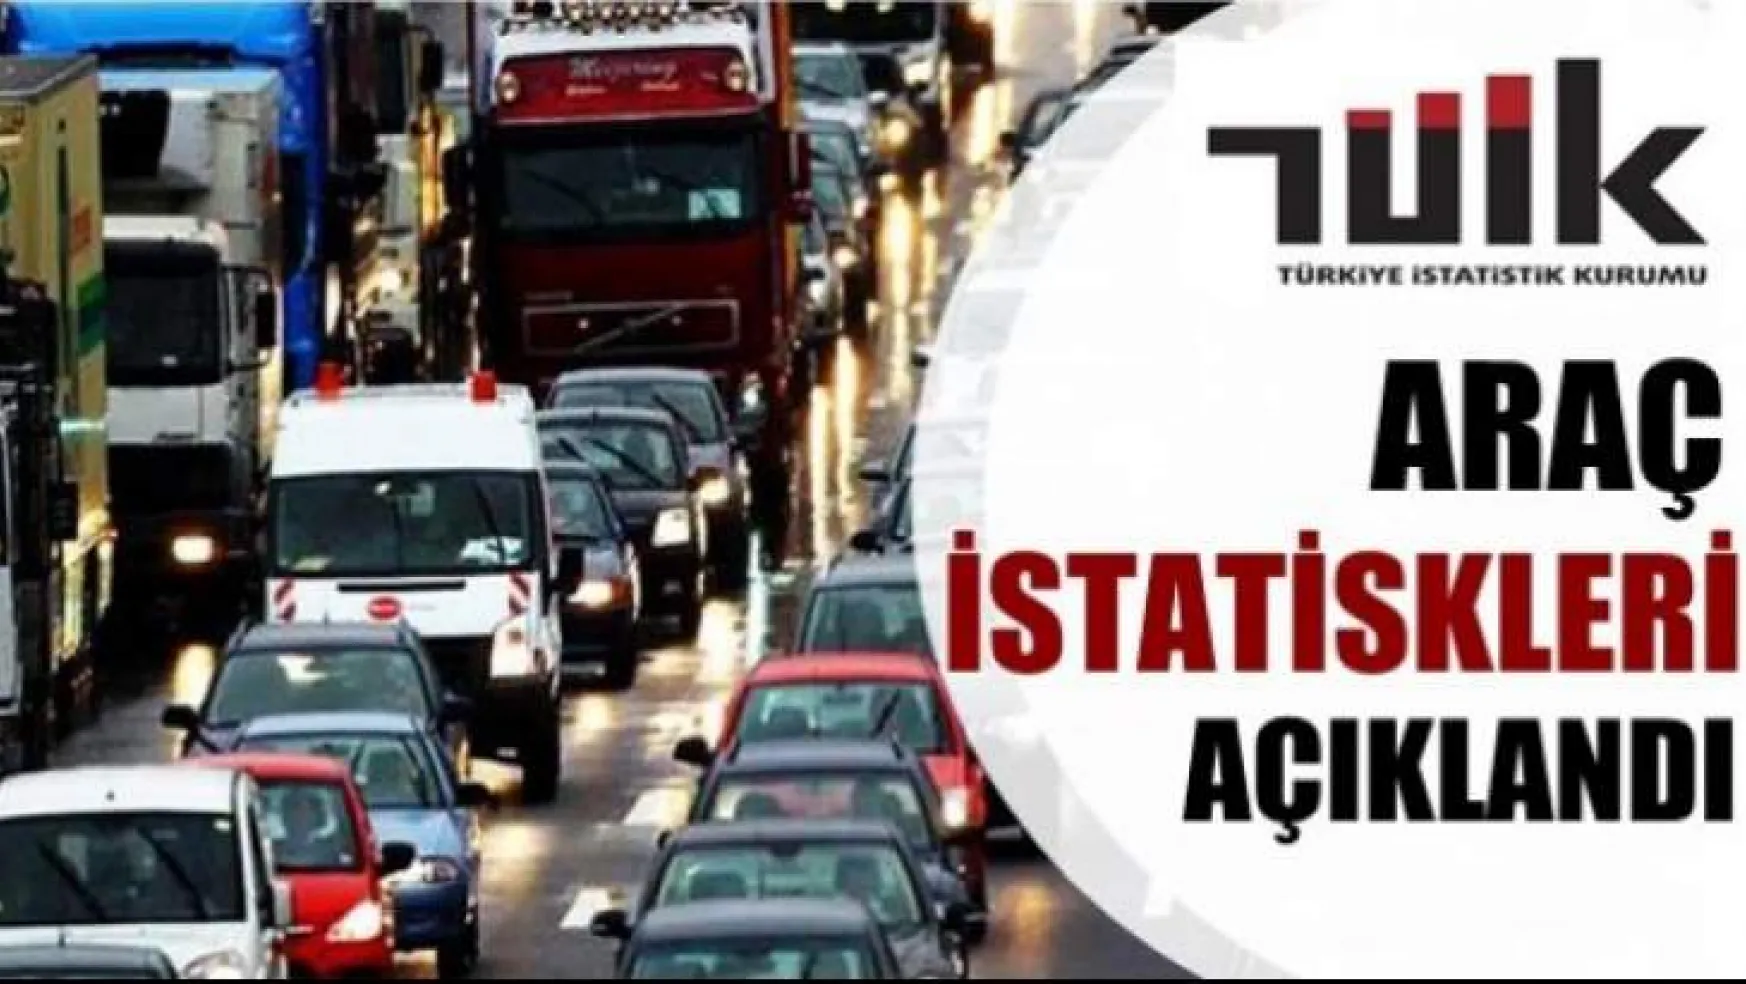 Malatya'da trafiğe kayıtlı araç sayısı Haziran ayı sonu itibarıyla 189 898 oldu.